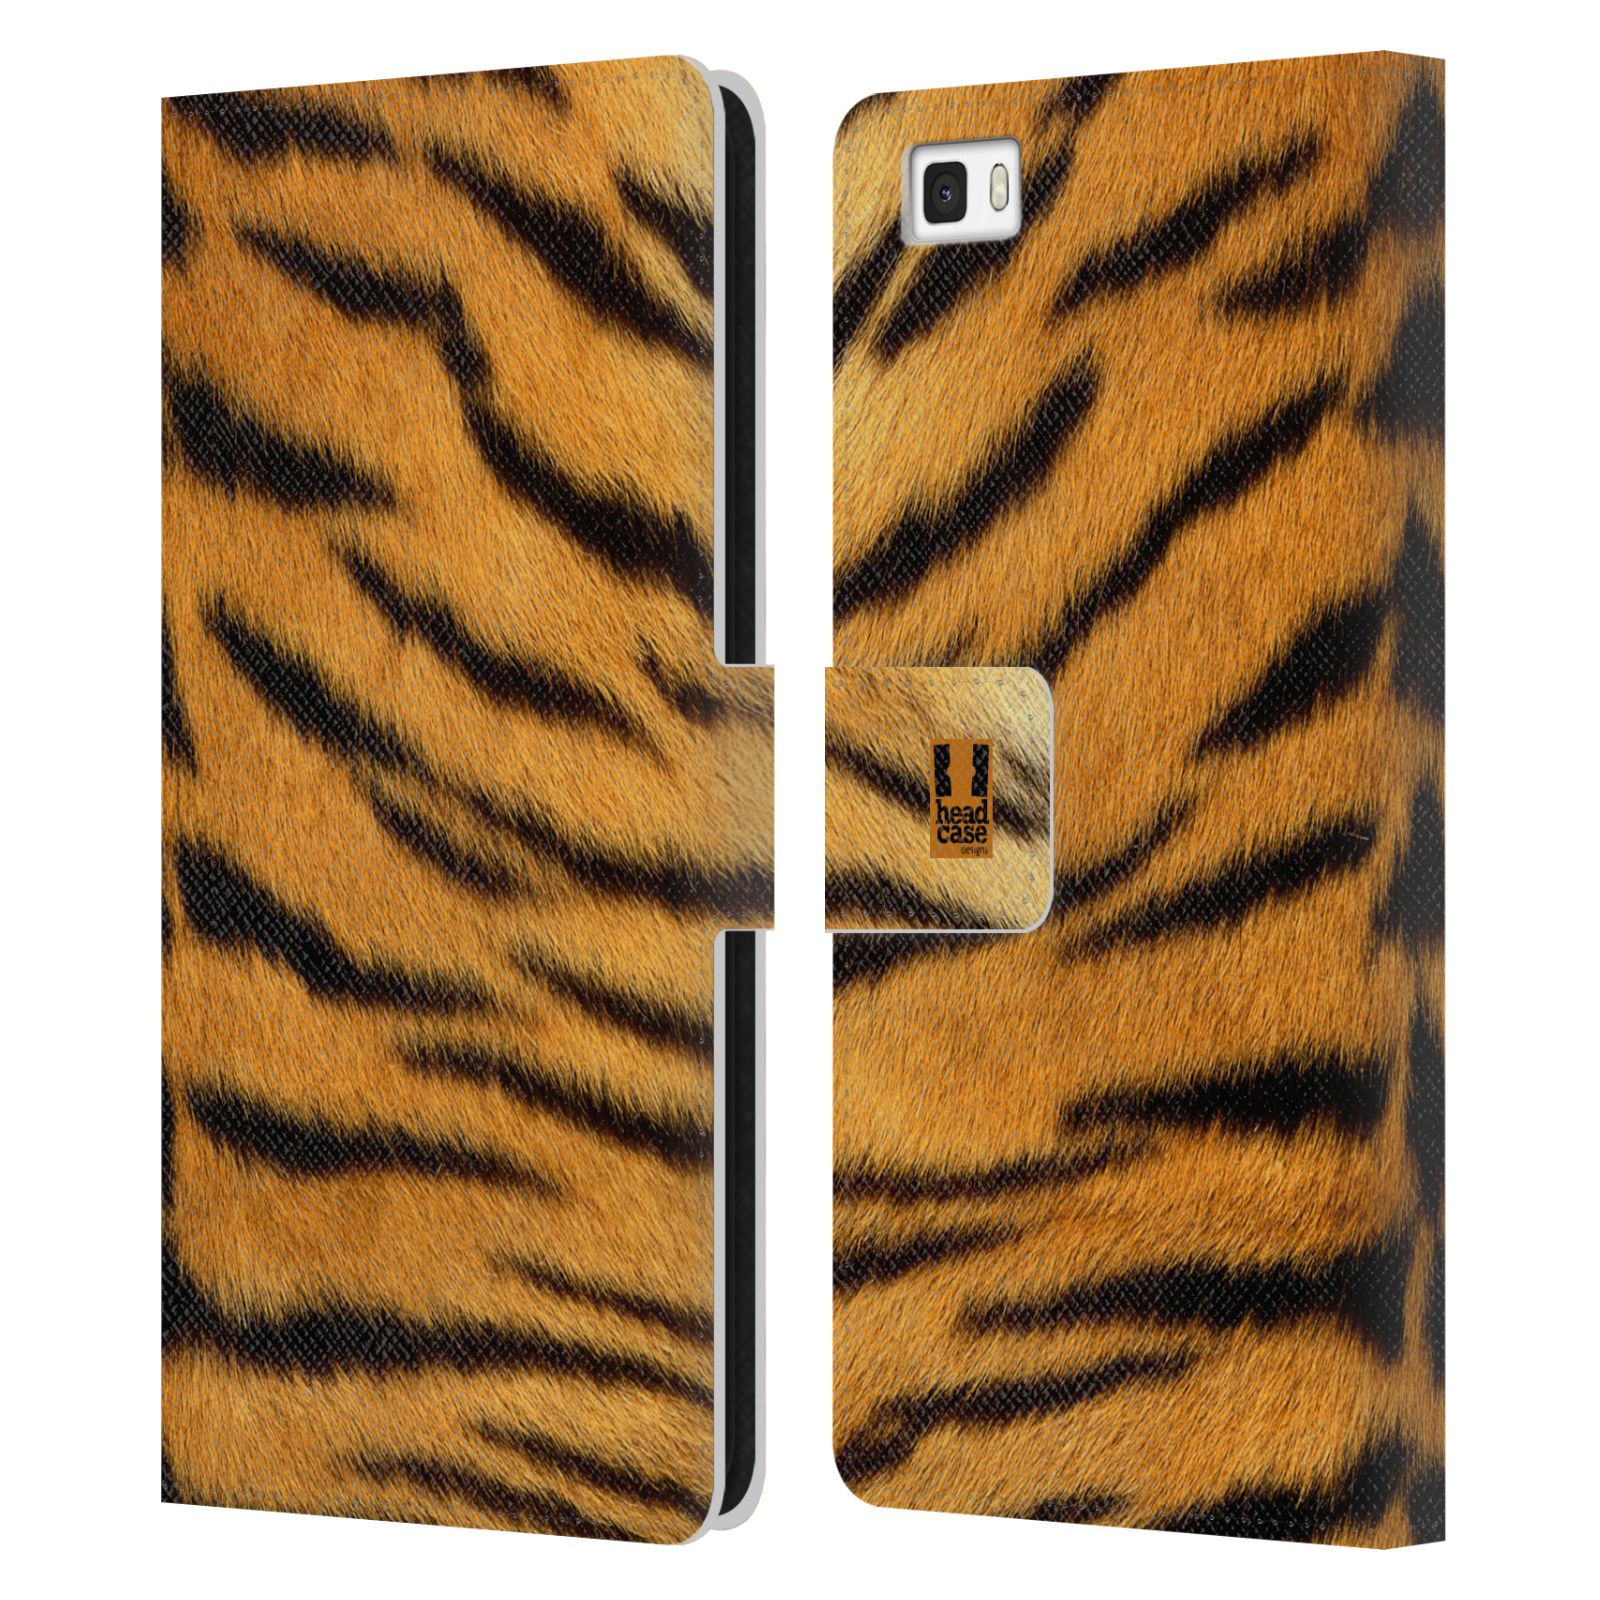 HEAD CASE Flipové pouzdro pro mobil Huawei P8 LITE zvíře srst divoká kolekce tygr